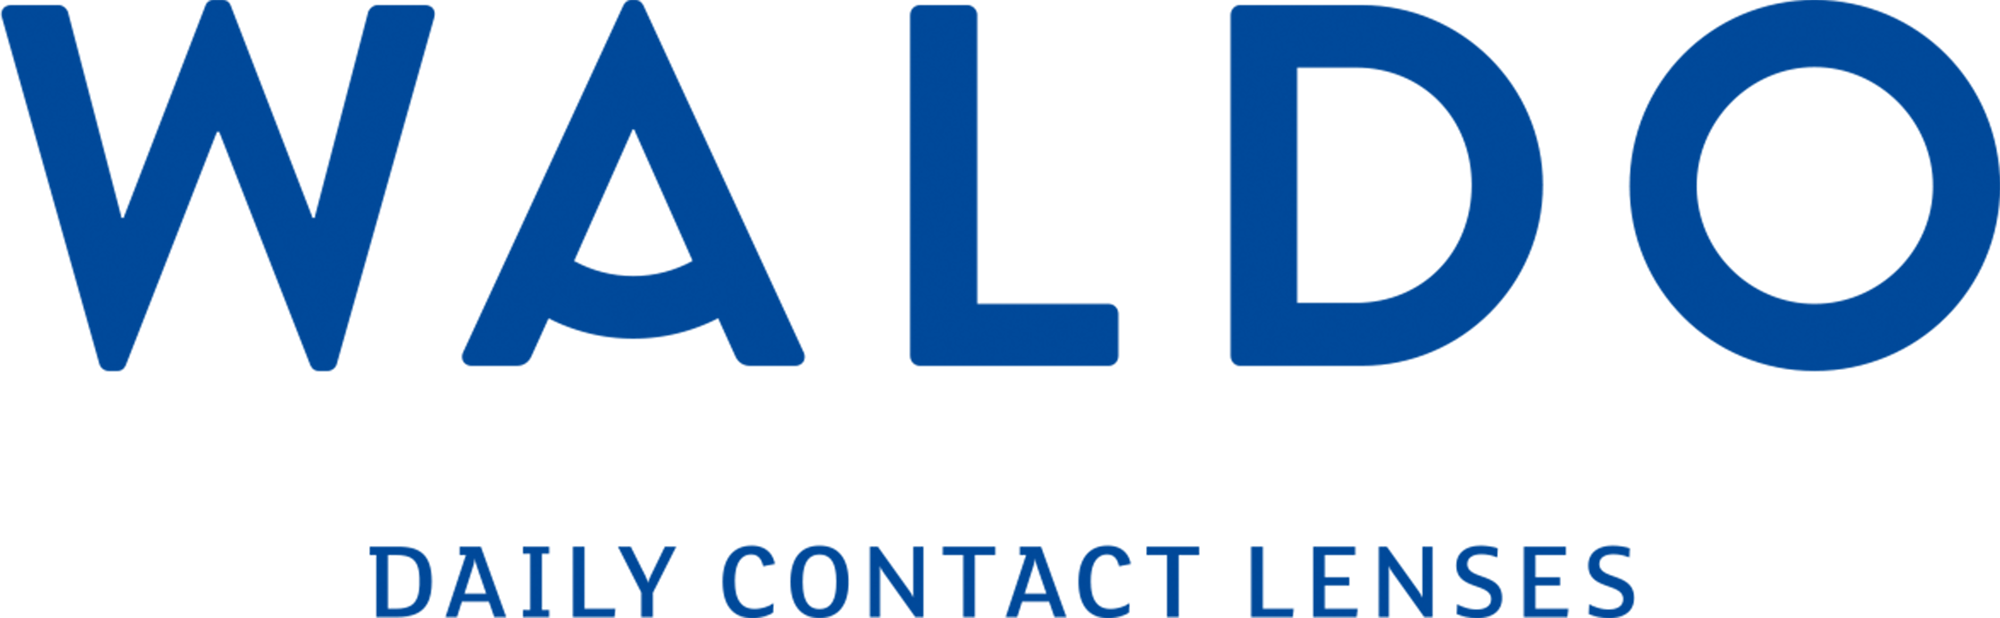 Waldo Contact Lenses Logo